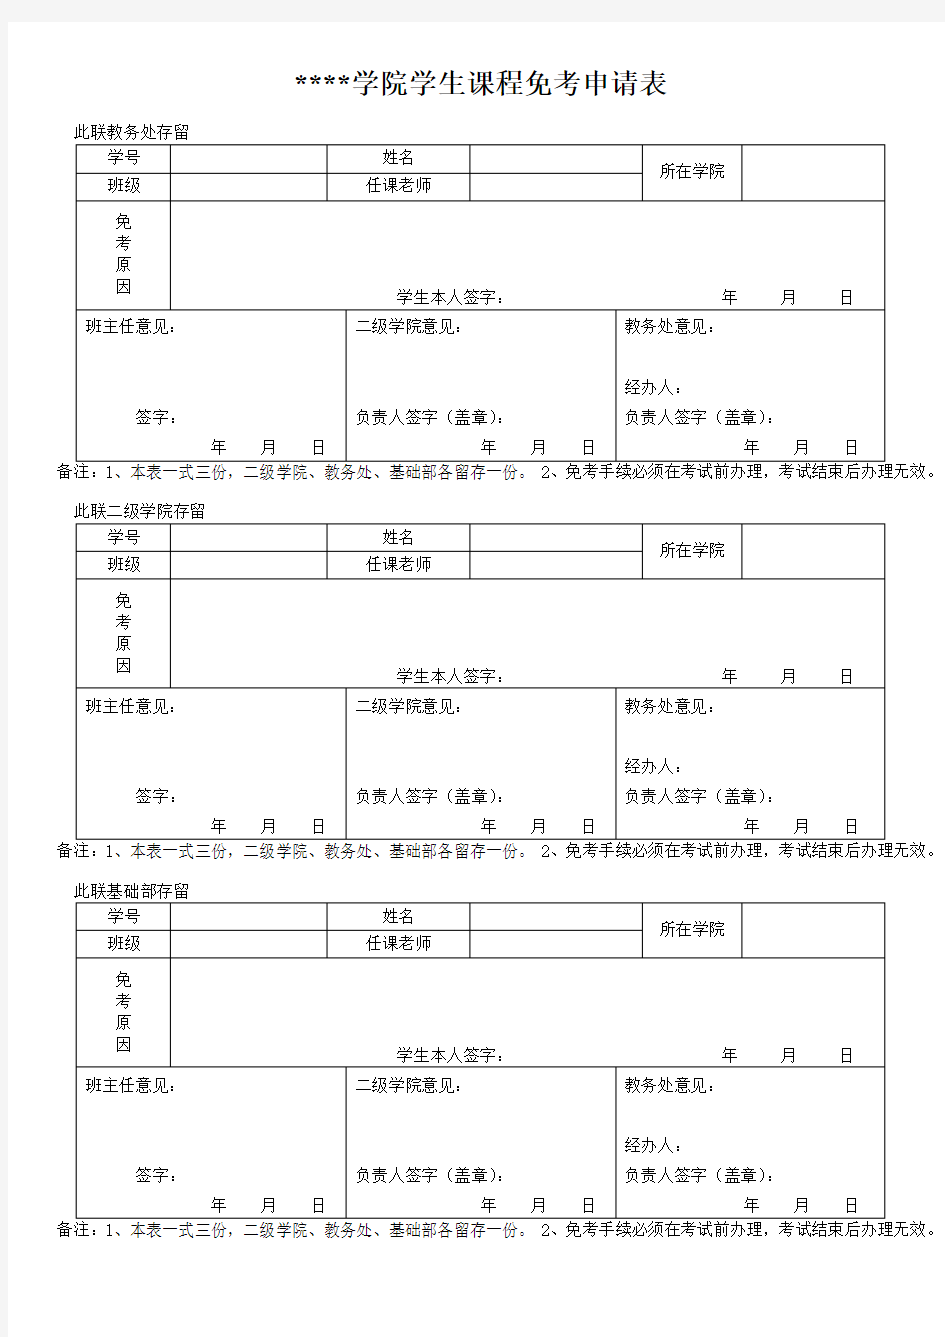 江西工业职业技术学院学生课程免考申请表【模板】